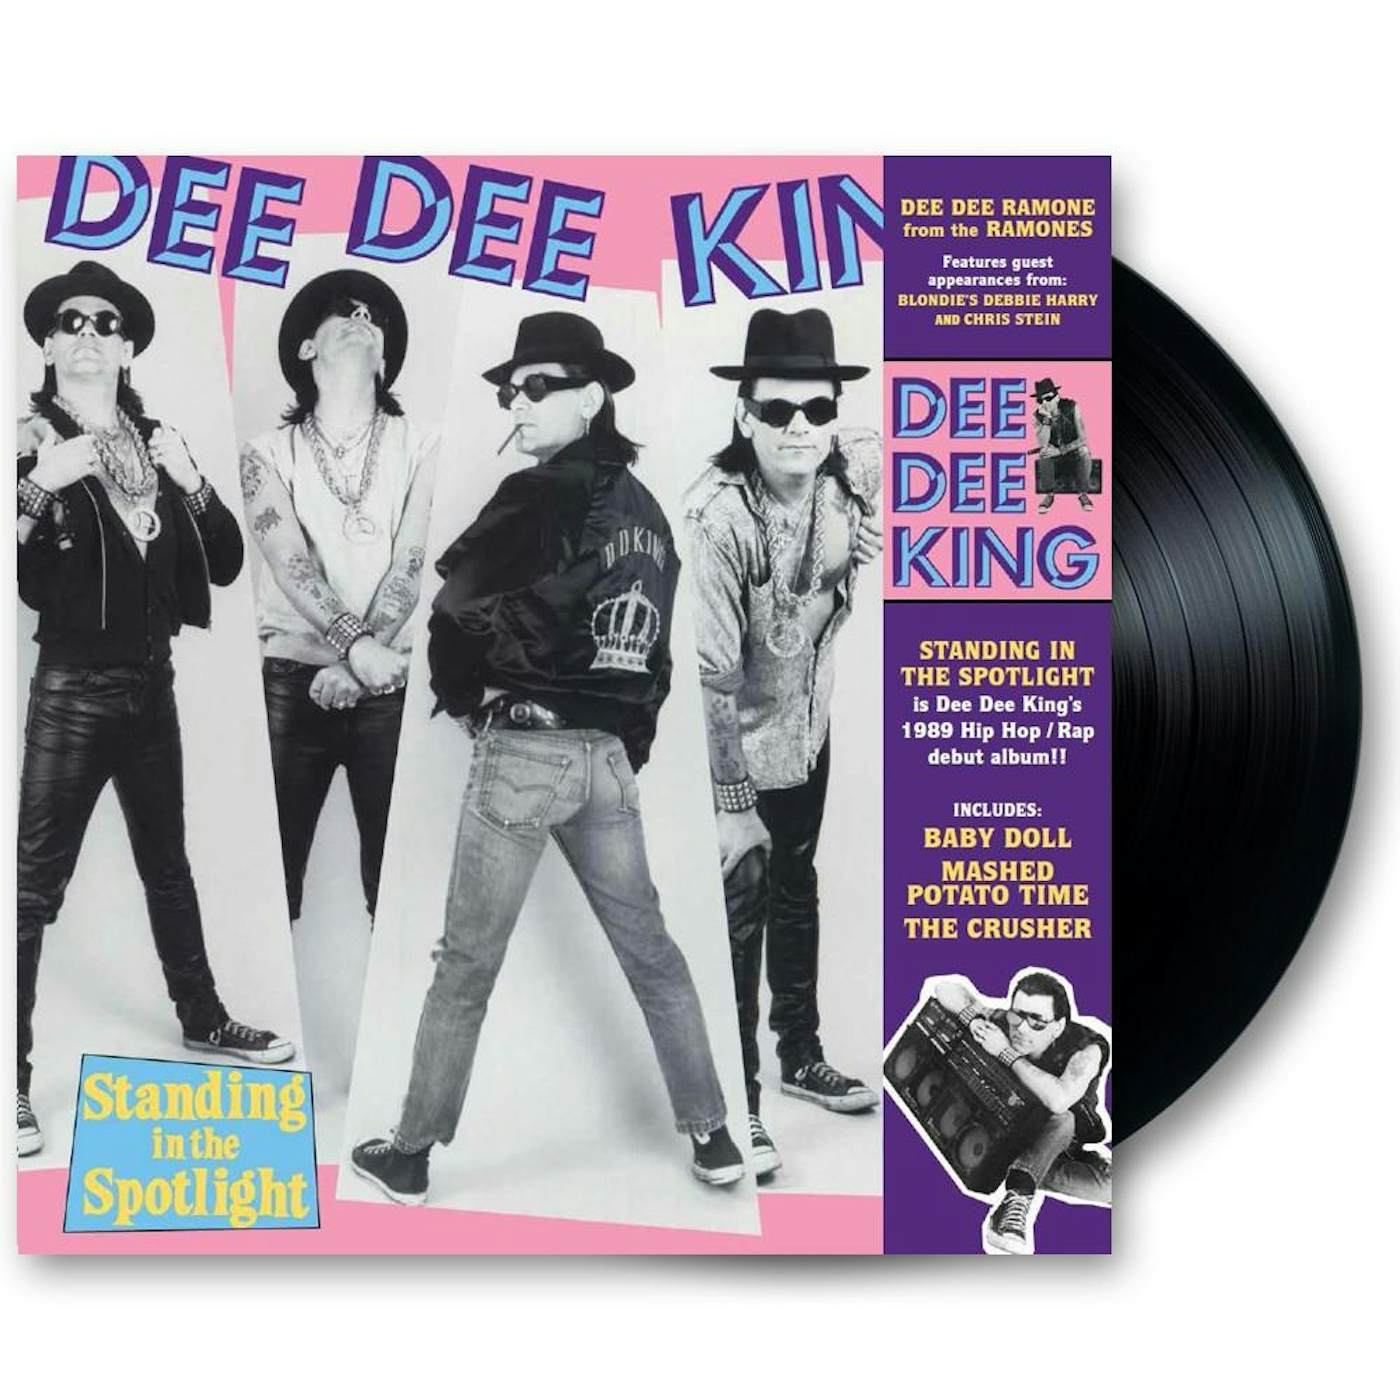 Dee Dee Ramone Dee Dee King “Standing in the Spotlight” 12” Vinyl LP (Ltd Ed Reissue)